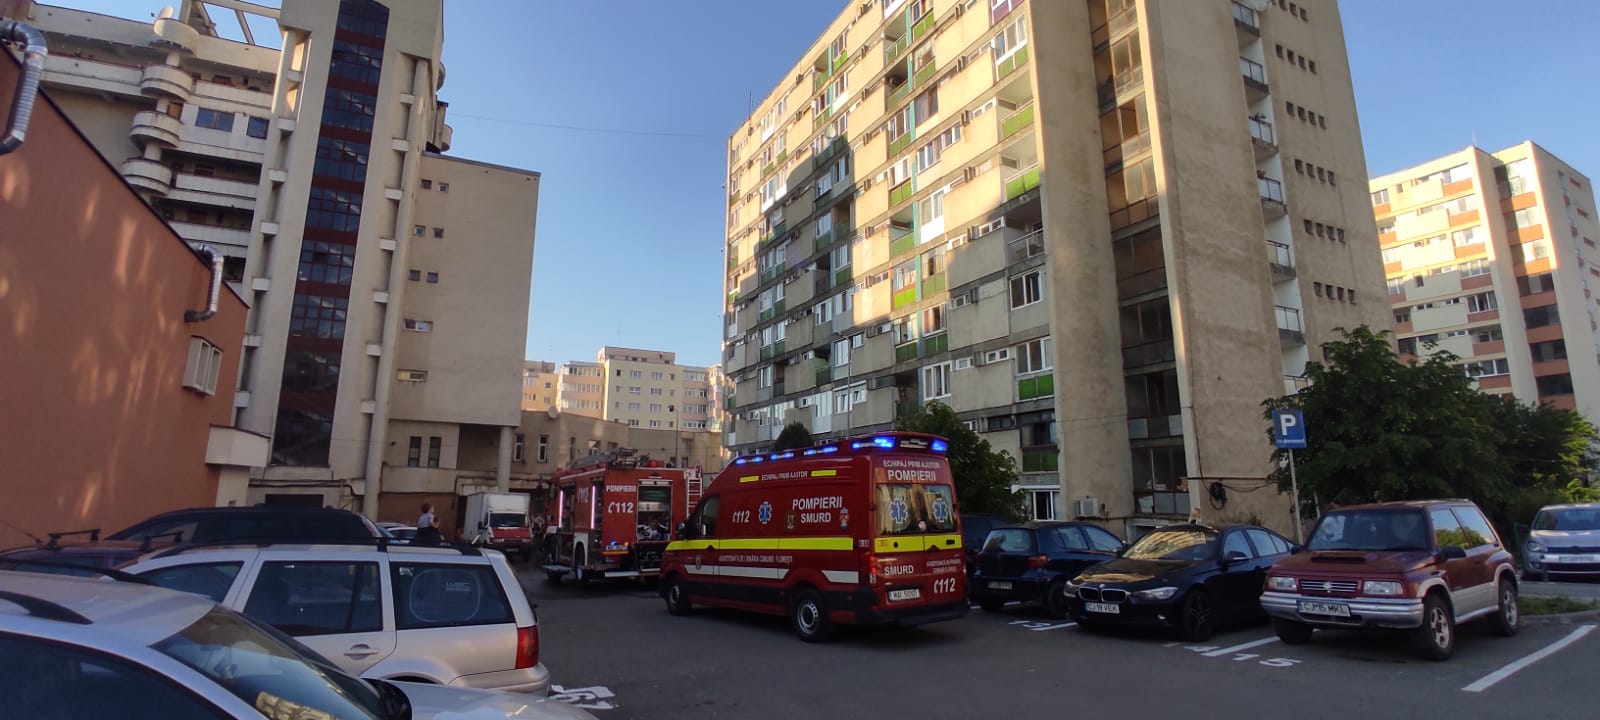 O persoană ar fi căzut de la etajul 4 pe o stradă din Dej. FOTO: Arhivă ISU Cluj